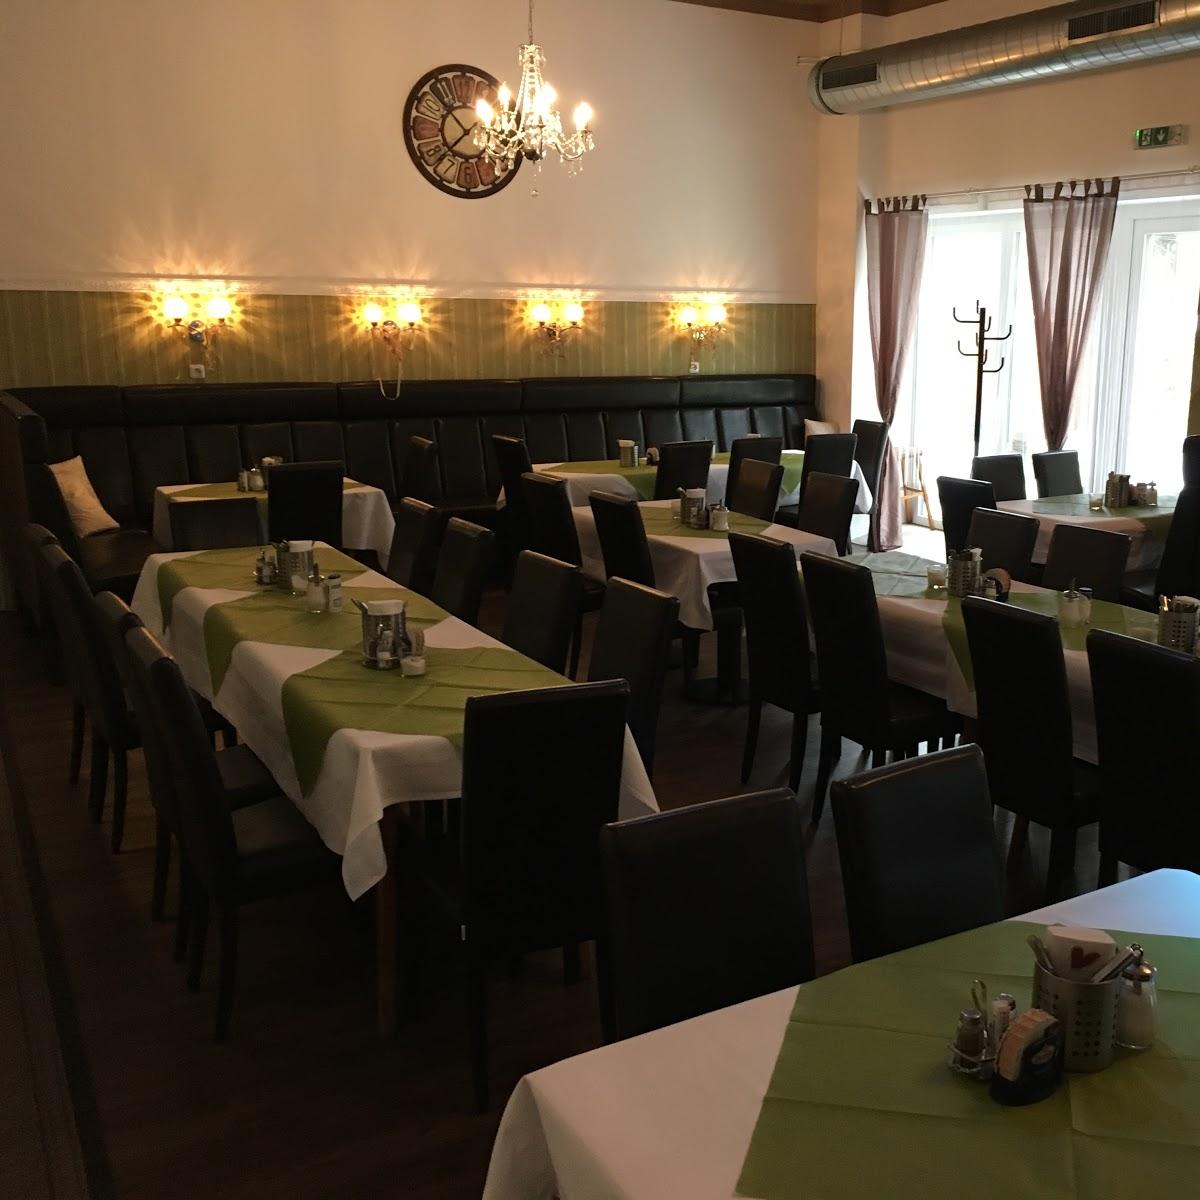 Restaurant "Willi´s Teichstüberl" in Weitra